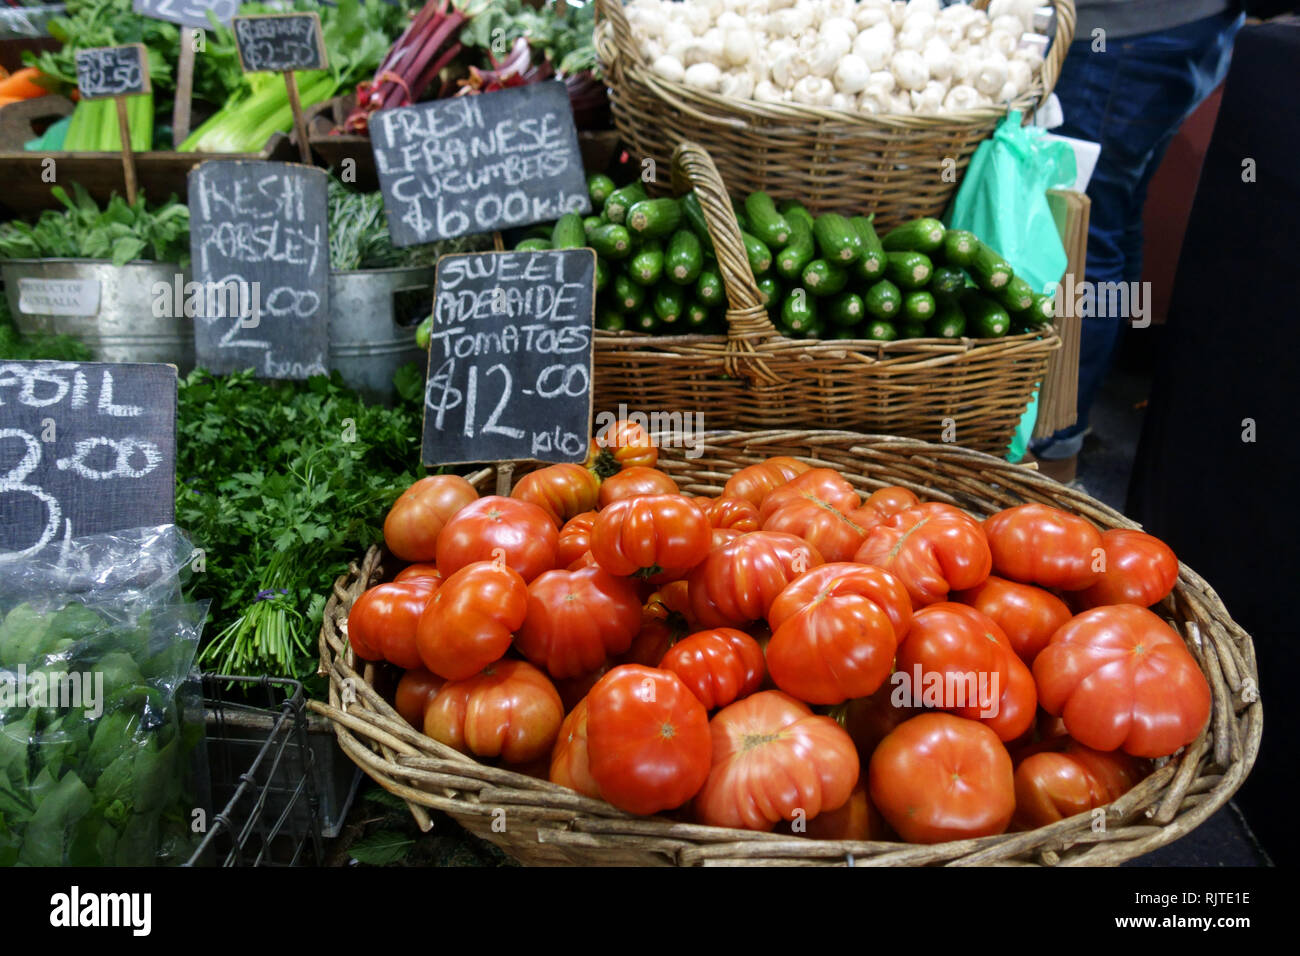 Los tomates frescos, libanés pepinos y otras verduras que se vende en el mercado de la reina Victoria Melbourne, Victoria, Australia Foto de stock